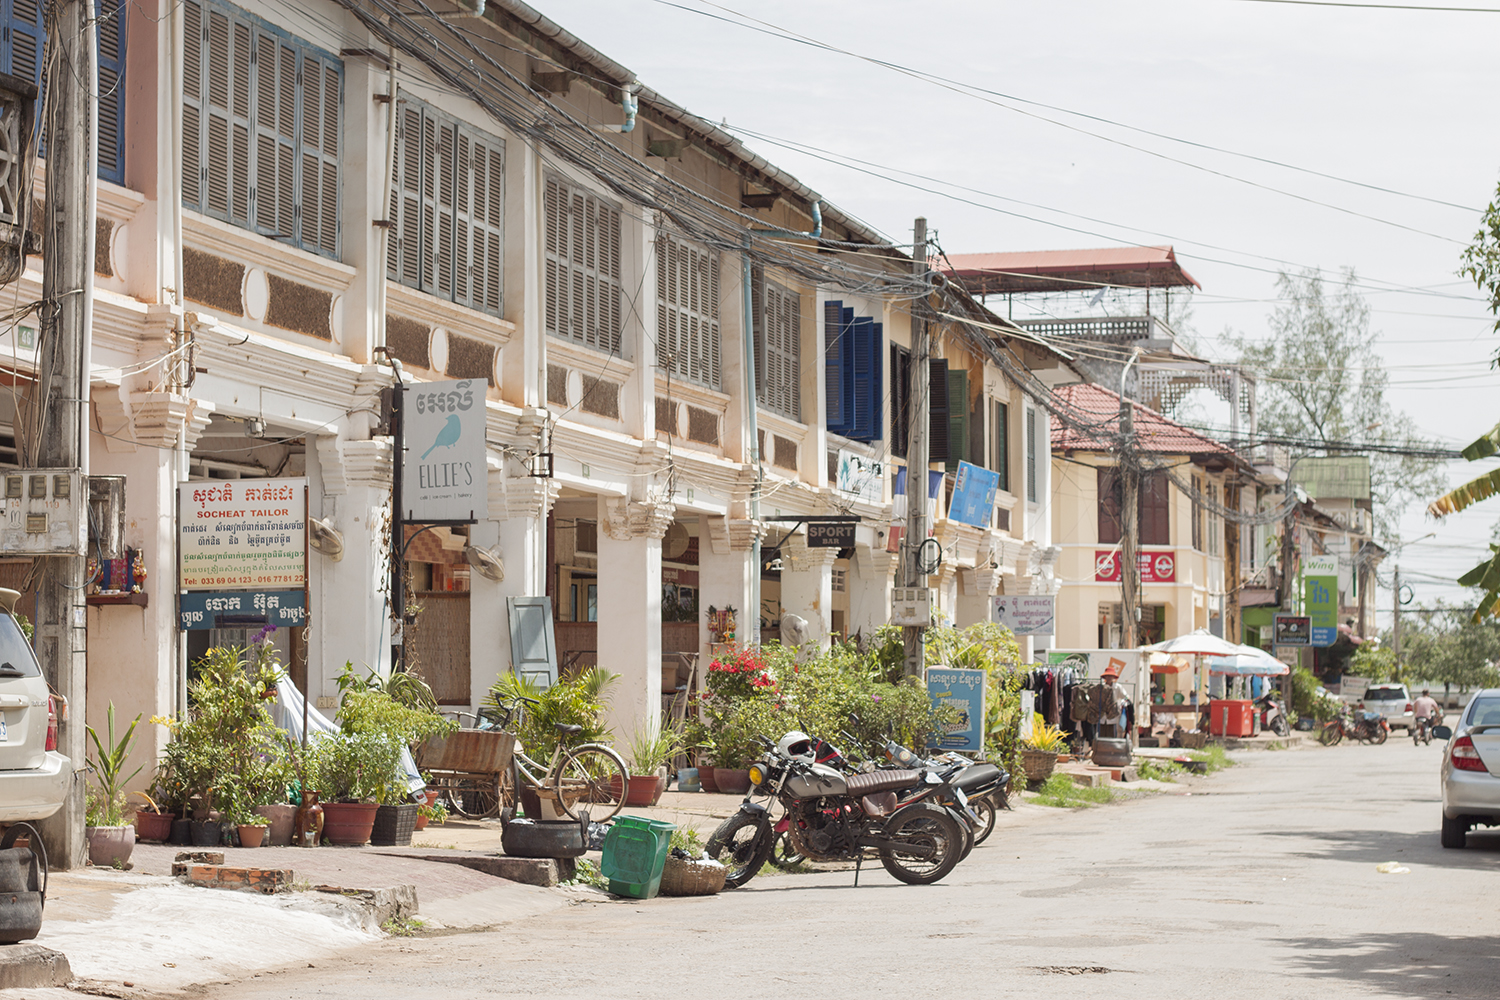 Kampot, thành phố thơ mộng ở miền nam Campuchia - 1